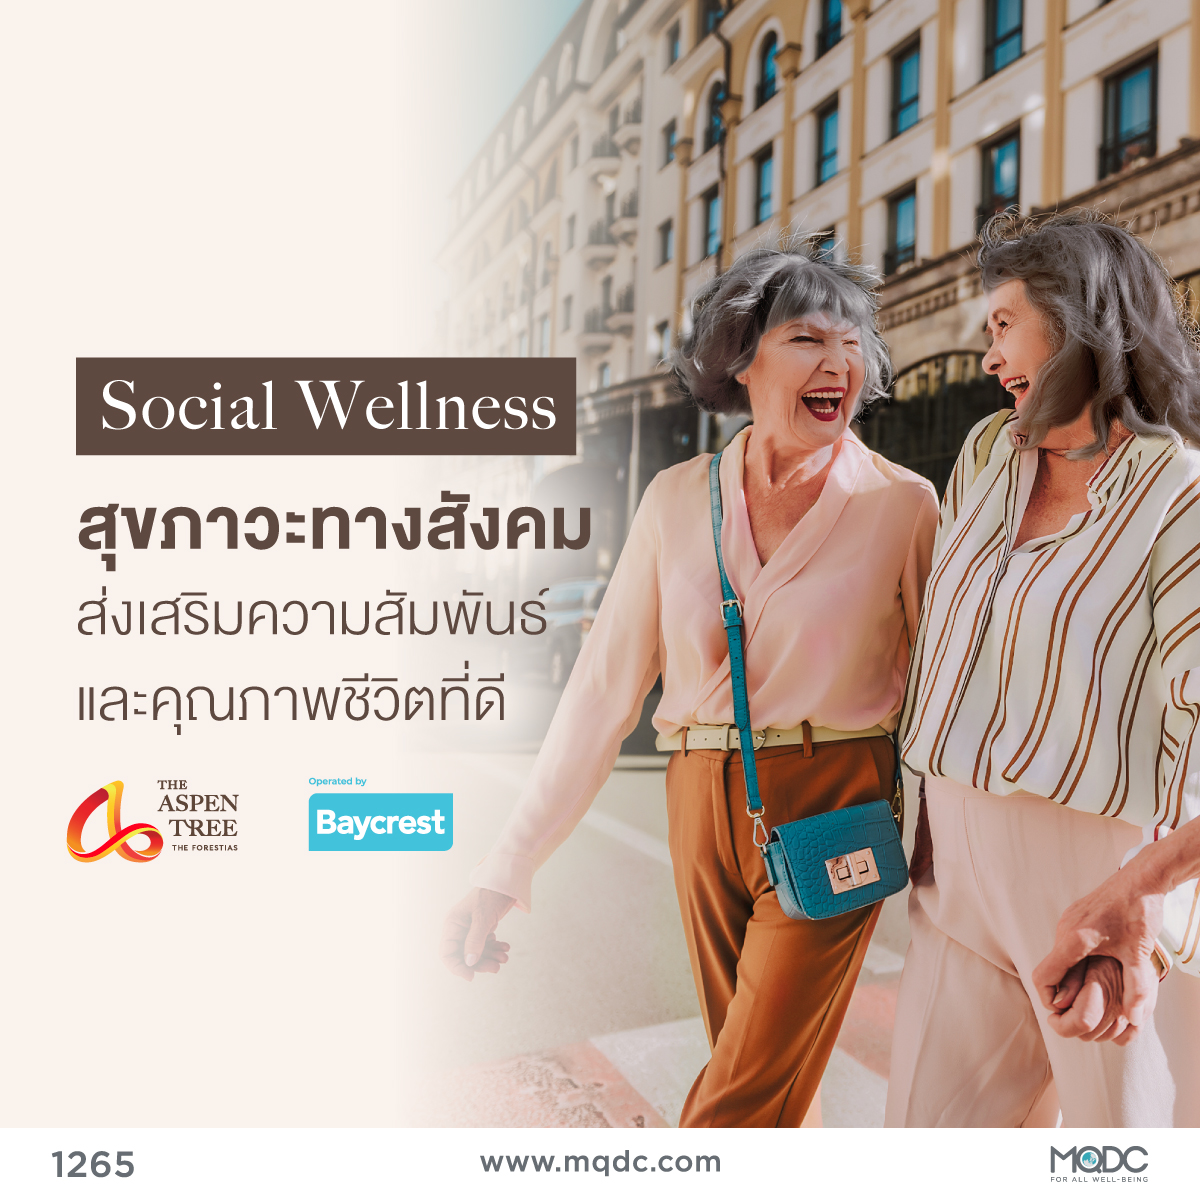 สุขภาวะทางสังคม (Social Wellness) ส่งเสริมความสัมพันธ์ และคุณภาพชีวิตที่ดี